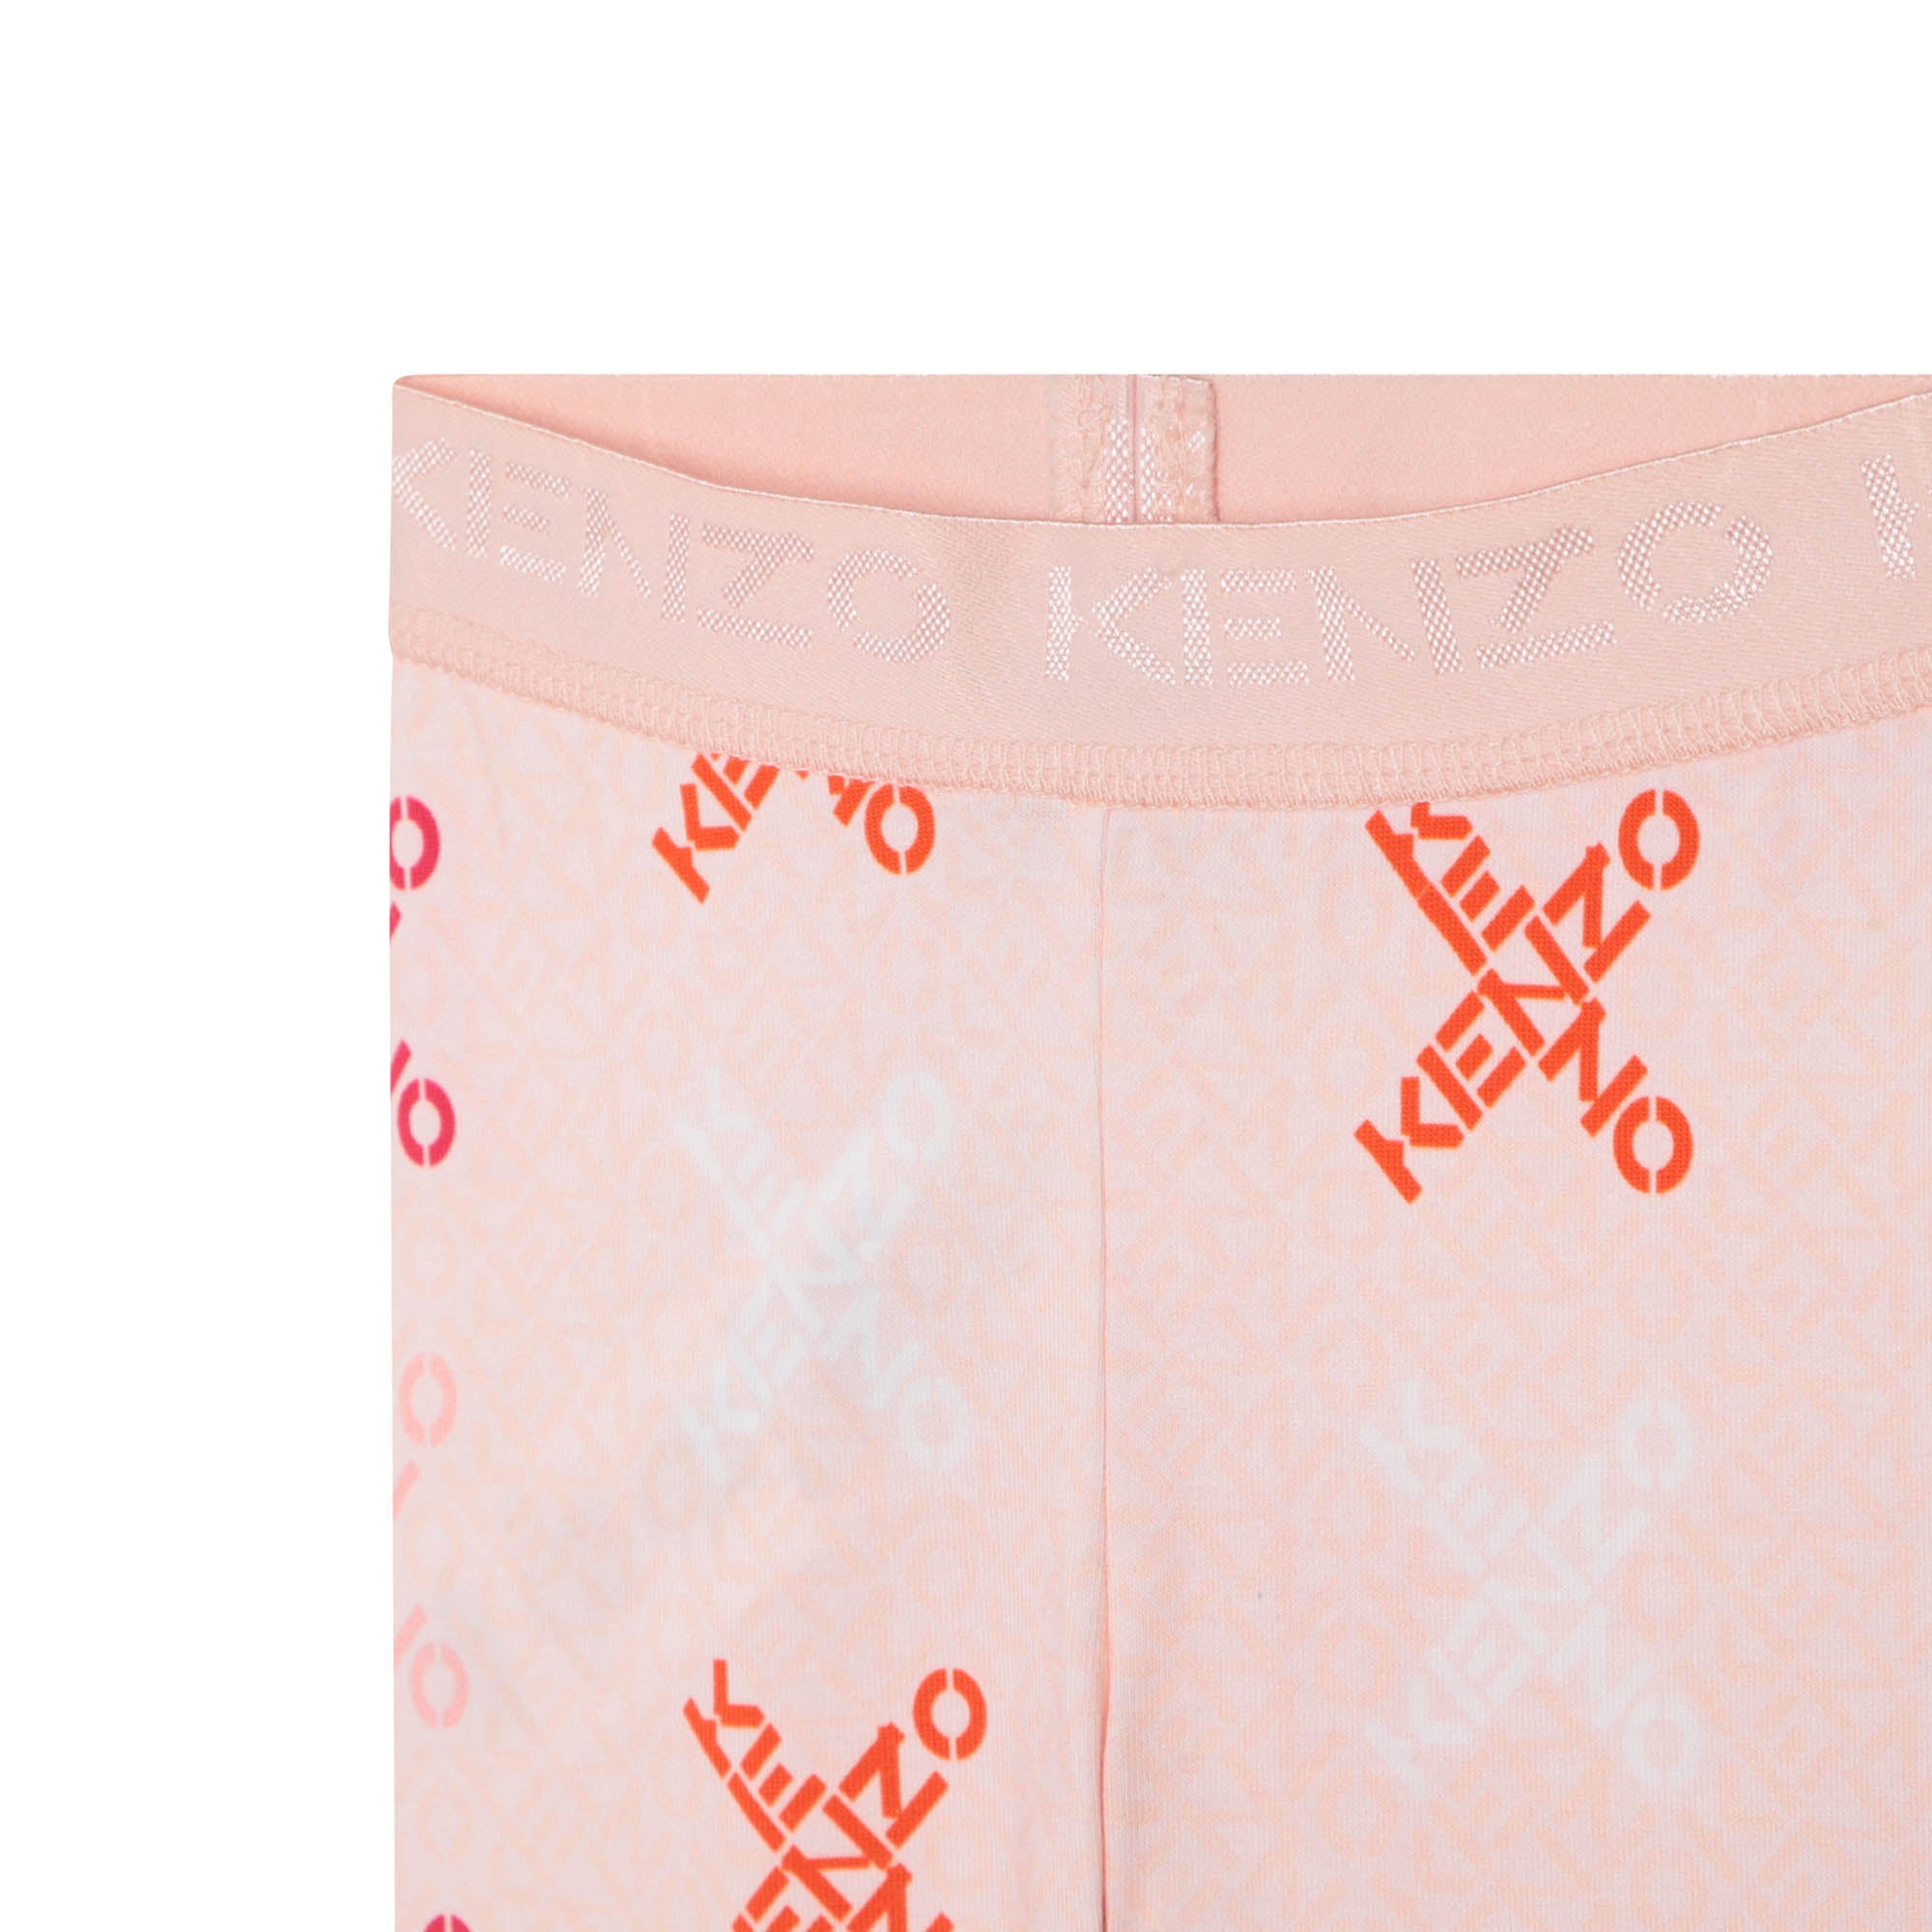 Baby Girls Pink Logo Cotton Leggings